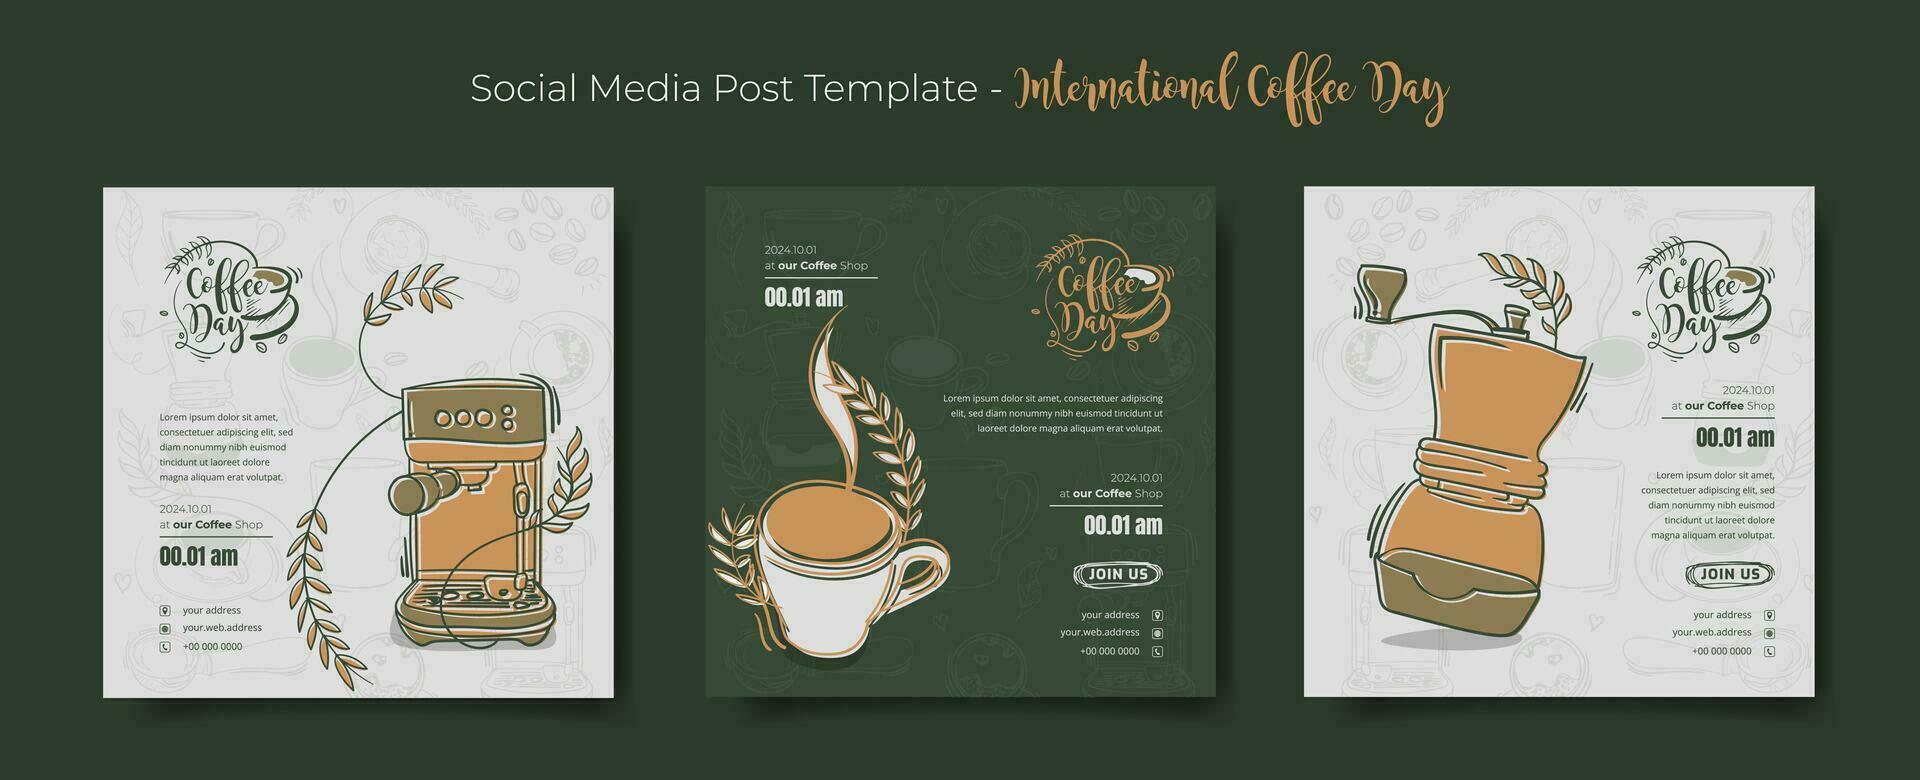 uppsättning av social media posta mall med kaffe och kaffe tillverkare i klotter konst design för kaffe dag vektor